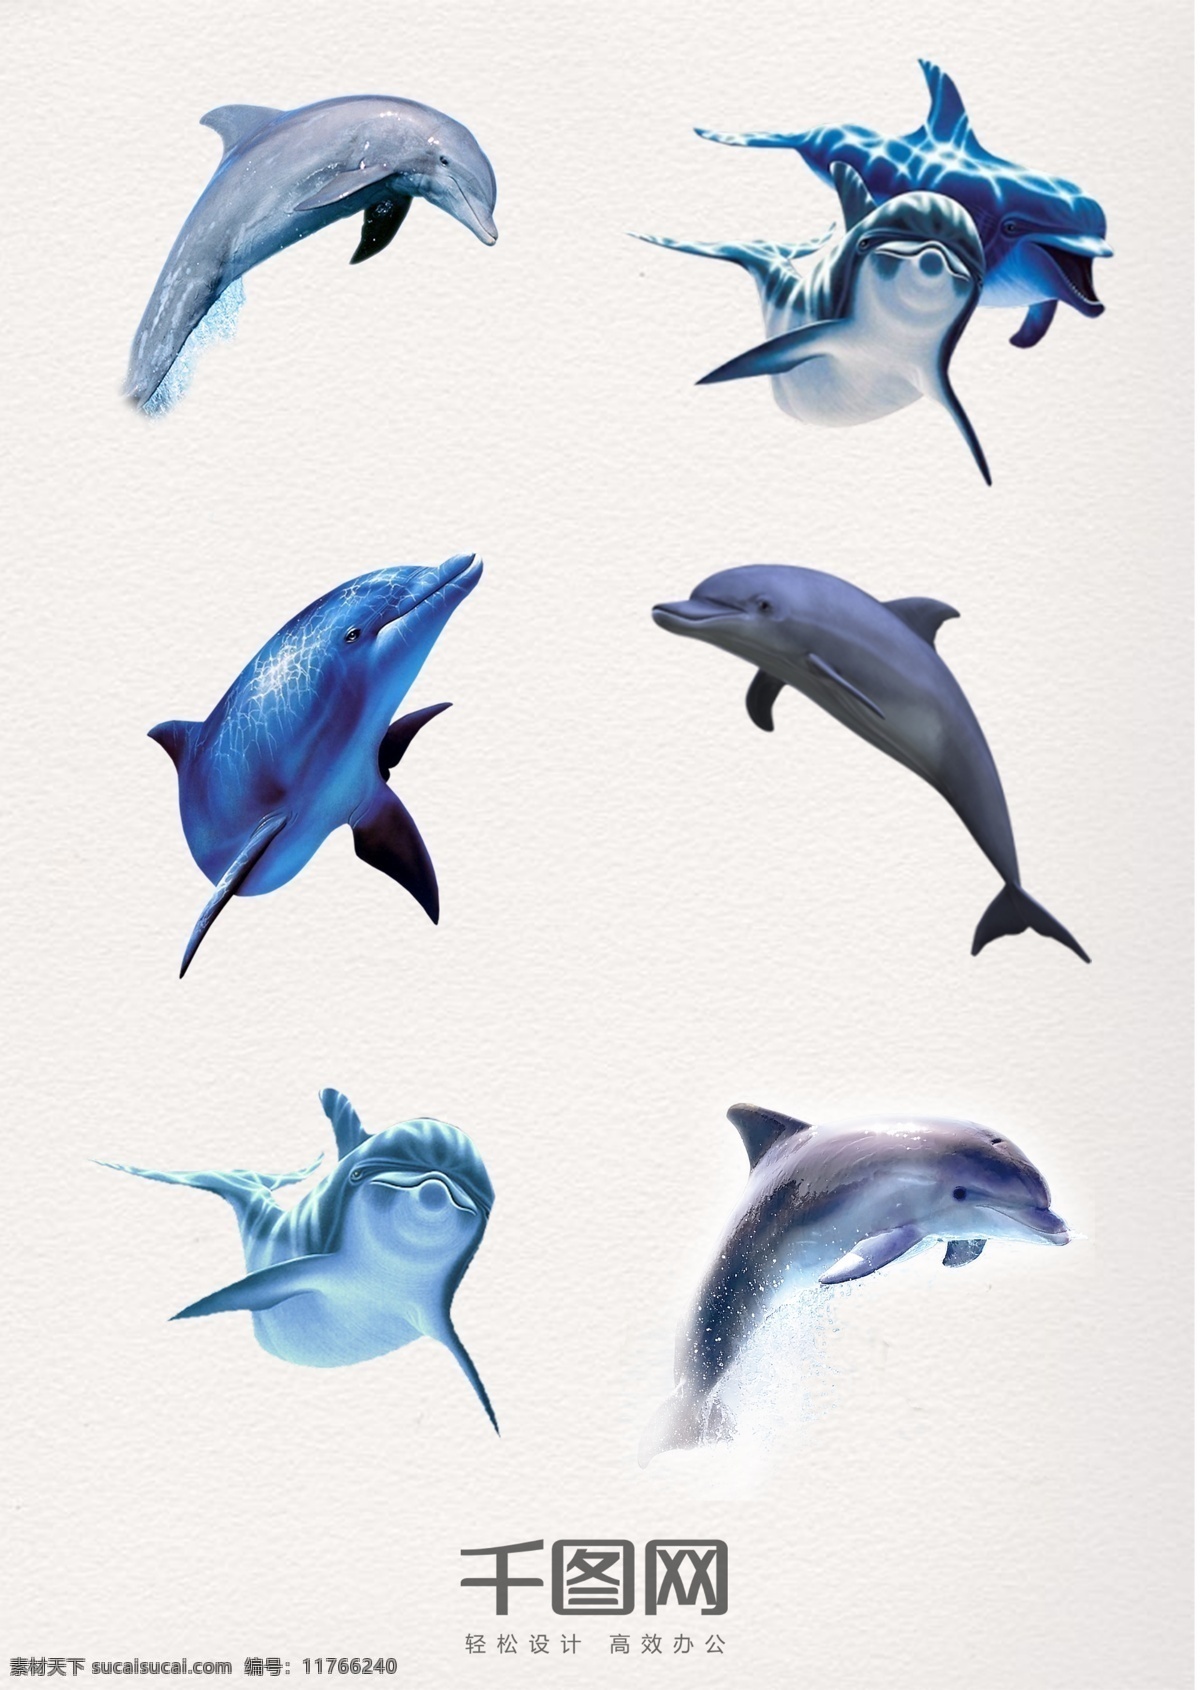 高清 跳跃 海豚 白头喙头海豚 海氏矮海豚 水纹海豚 跳跃的海豚 海底海豚 水浪 水花 白腹海豚